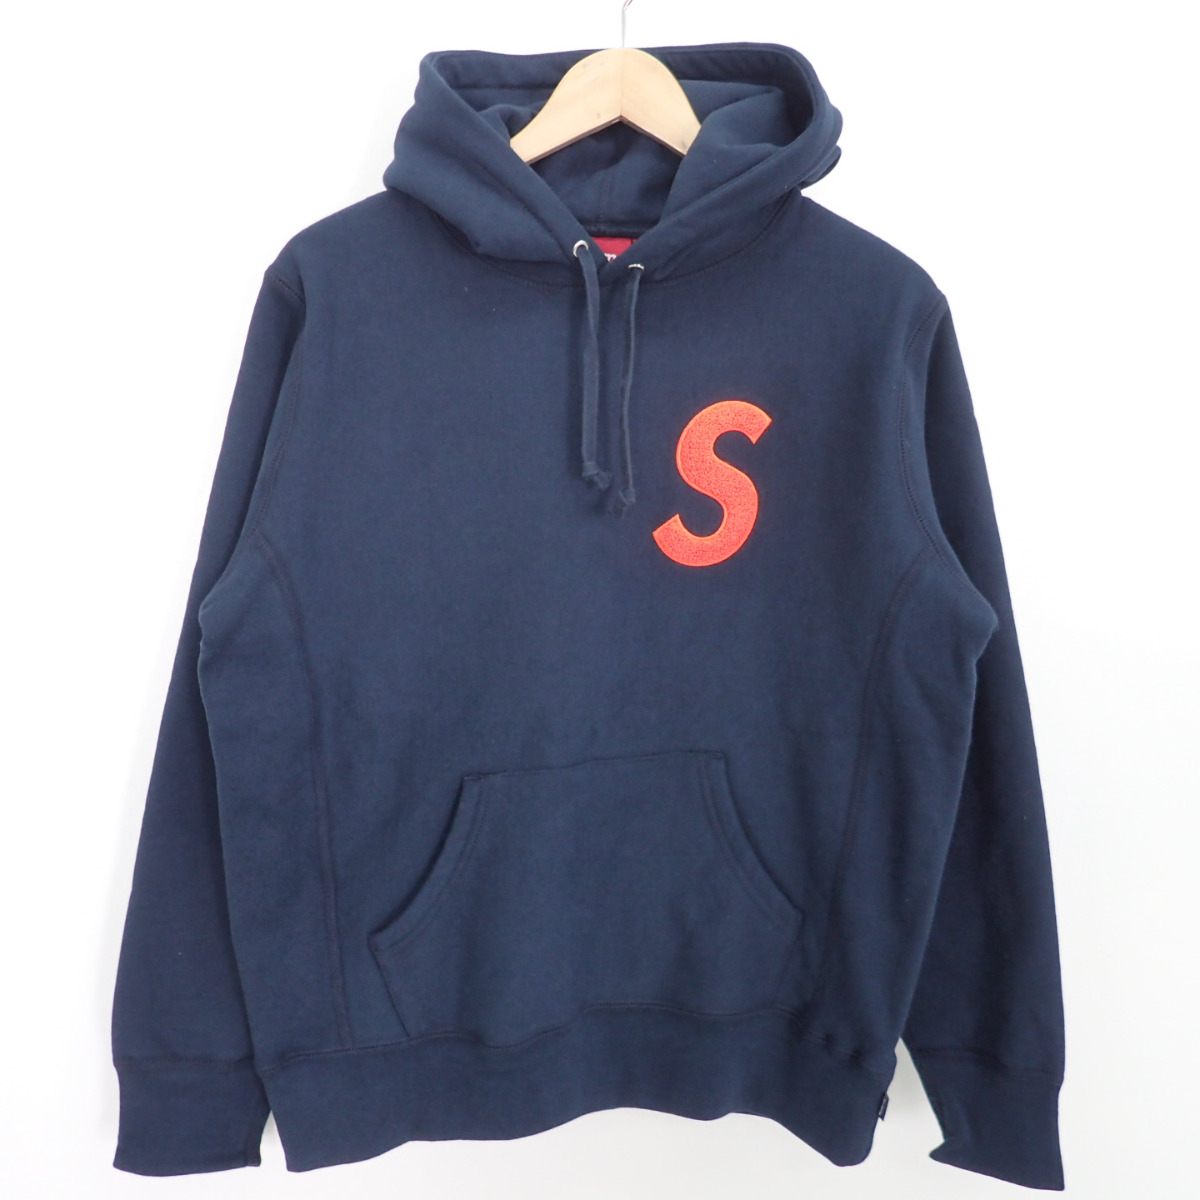 シュプリームのS Logo Hooded Sweatshirt パーカーの買取実績です。